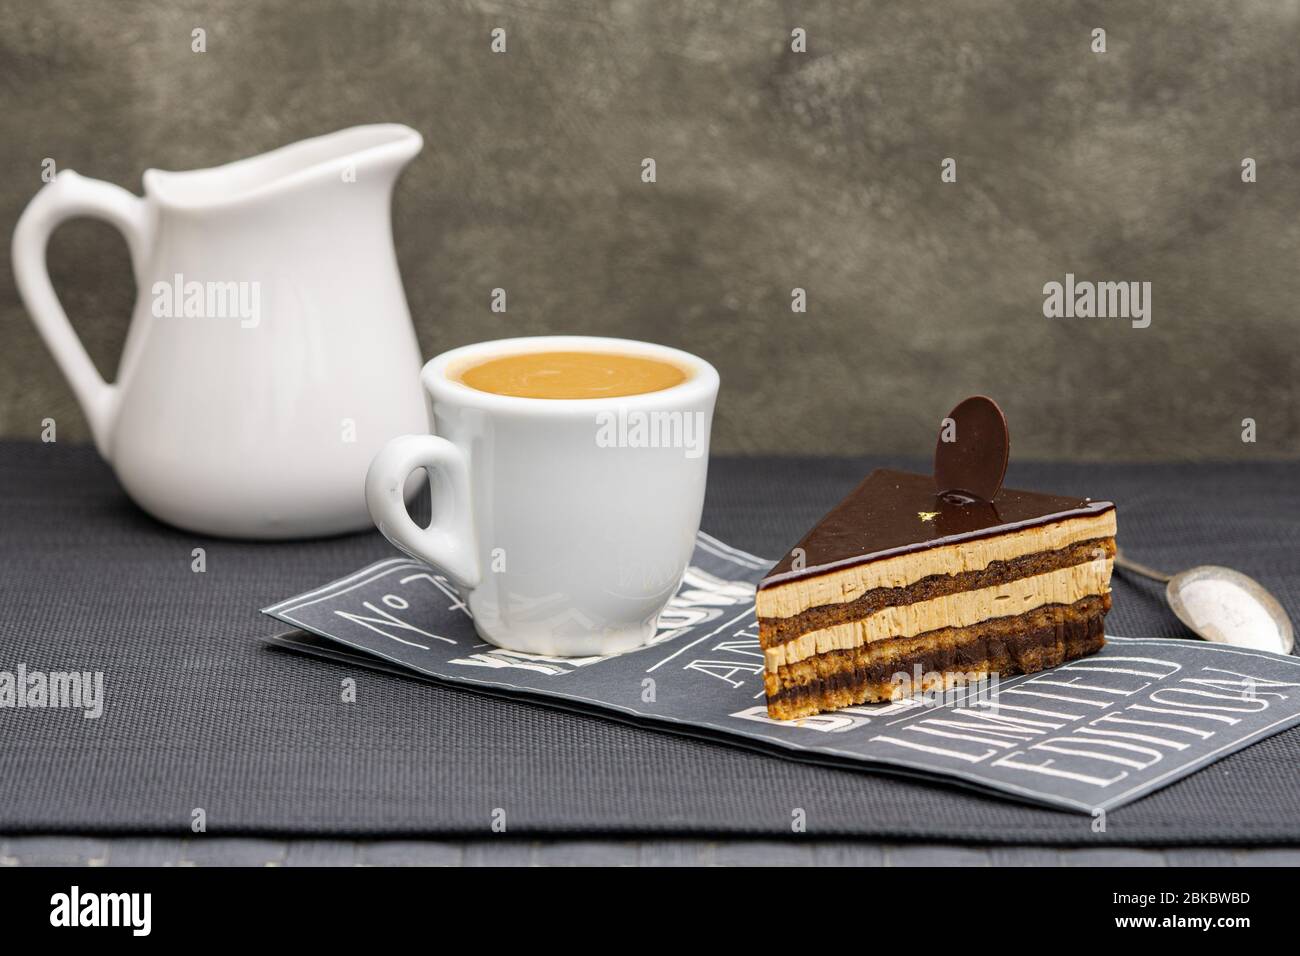 Torta al cioccolato con opera e tazza di caffè espresso. Spazio di copia. Foto Stock